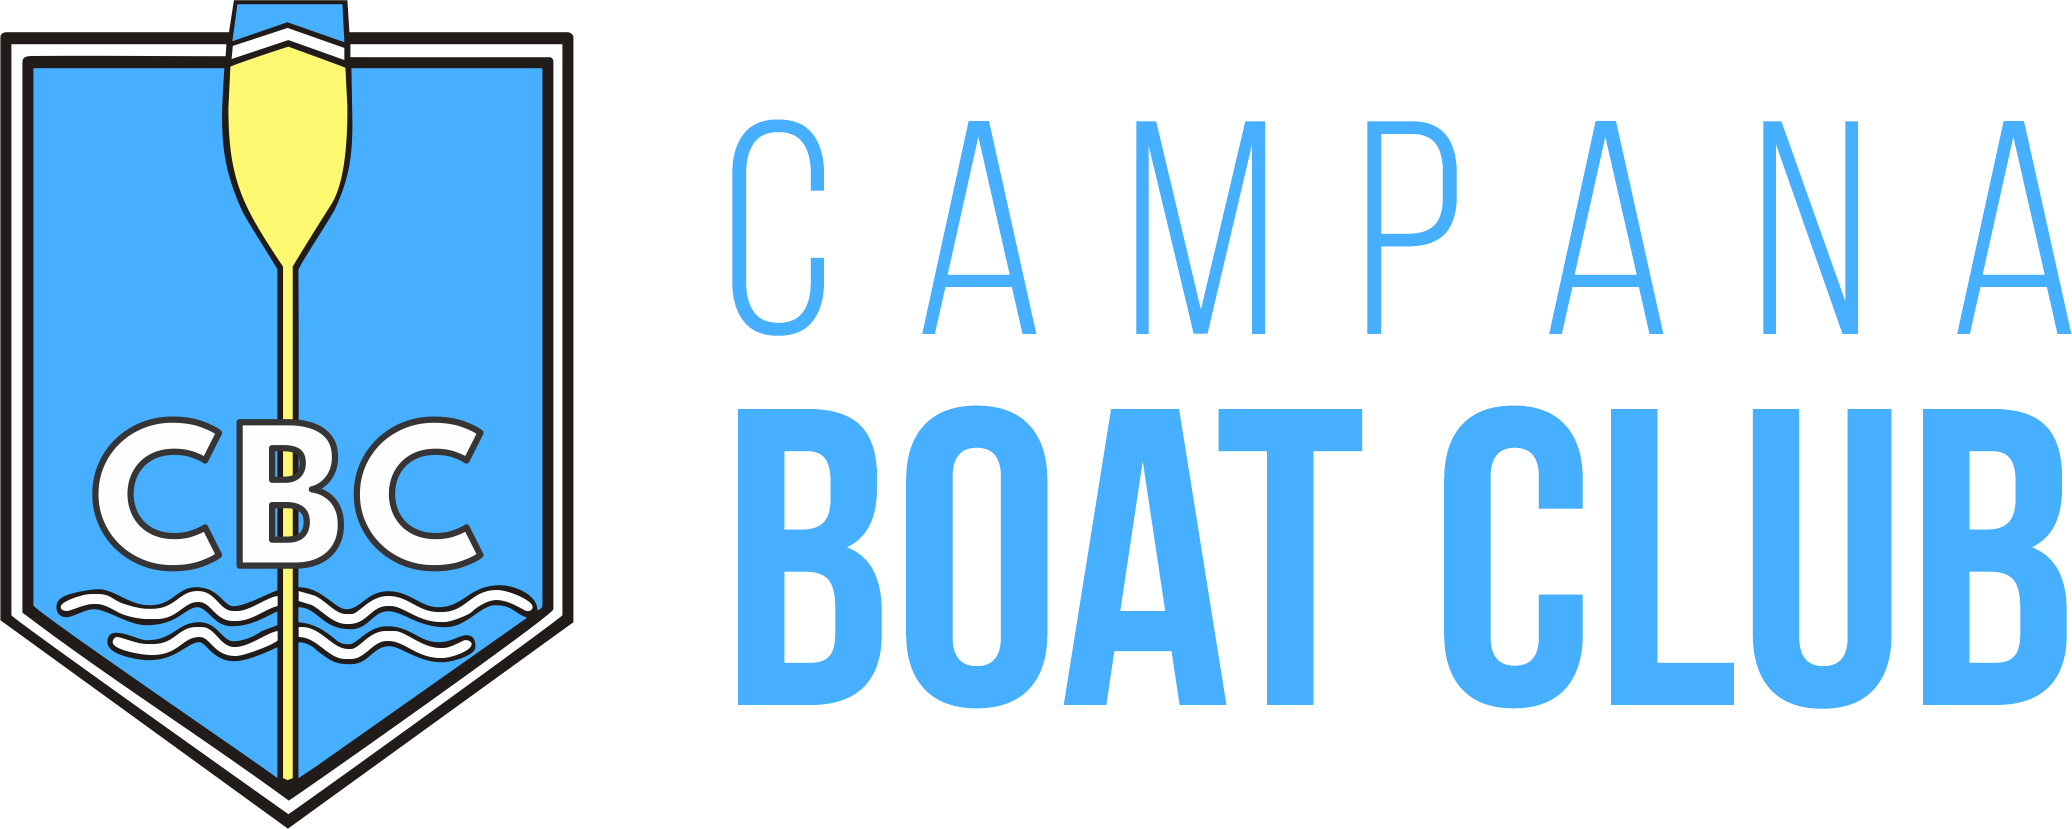 Sitio Oficial del Campana Boat Club